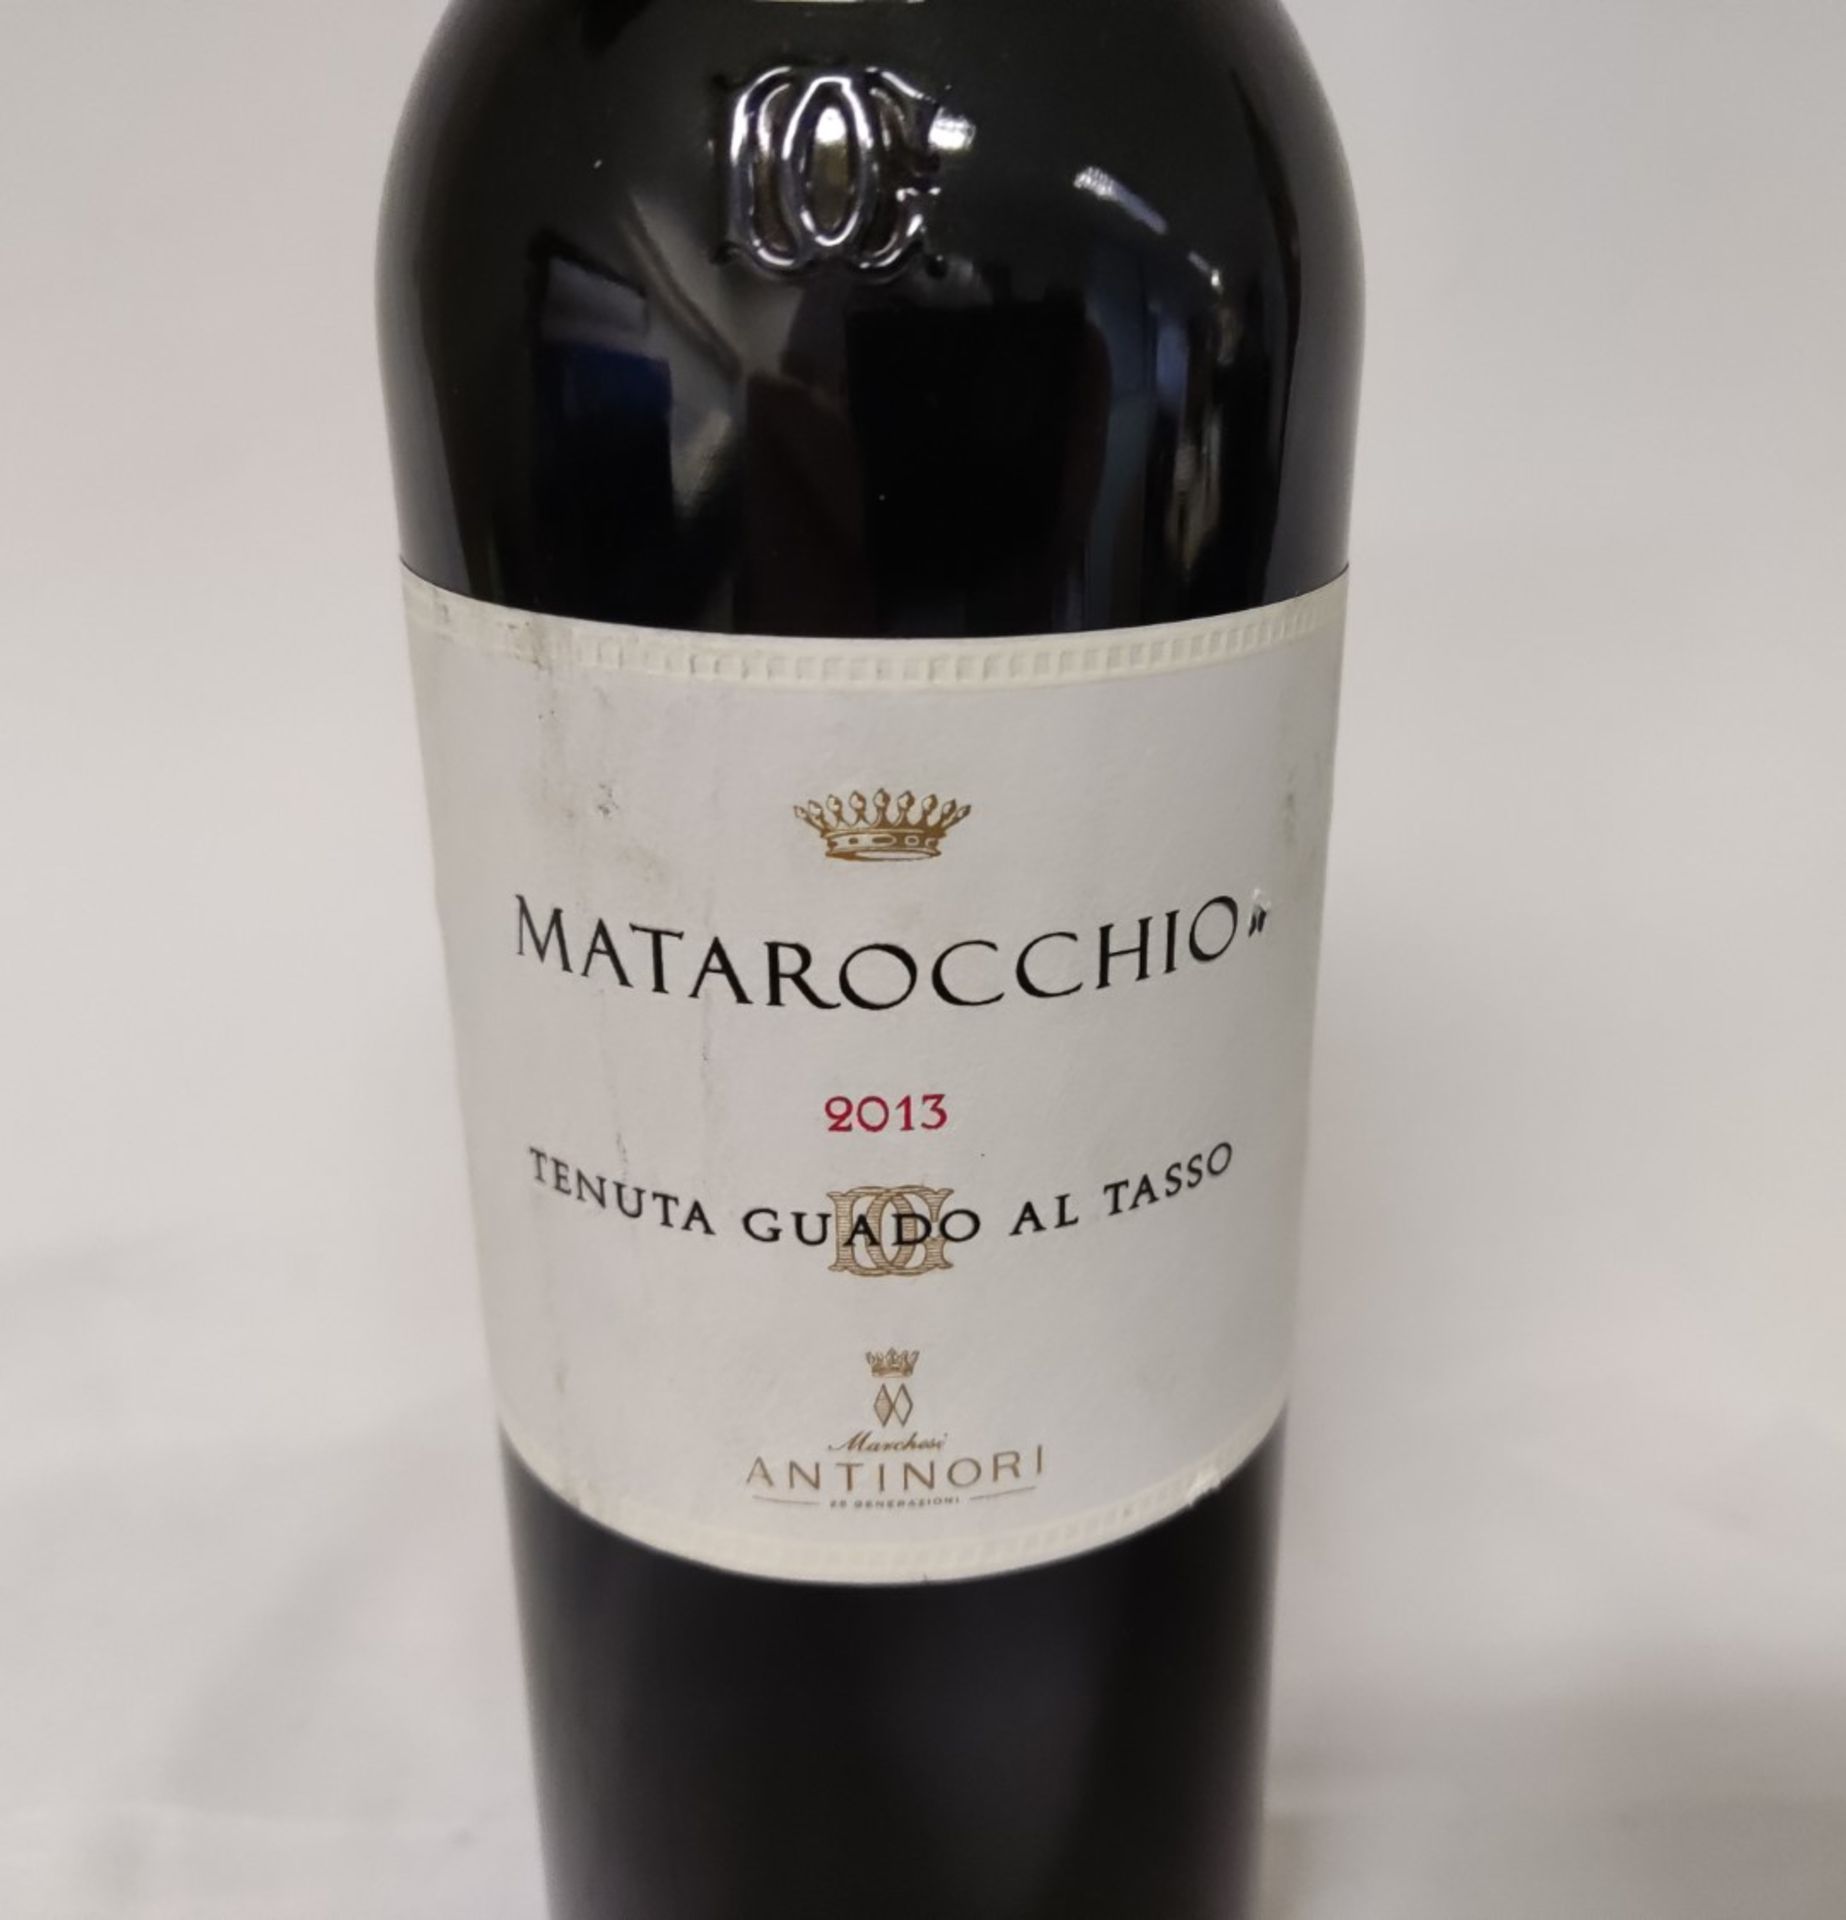 2 x Bottles of 2013 Marchesi Antinori Tenuta Guado Al Tasso Matarocchio Bolgheri Red Wine - RRP £760 - Image 9 of 12